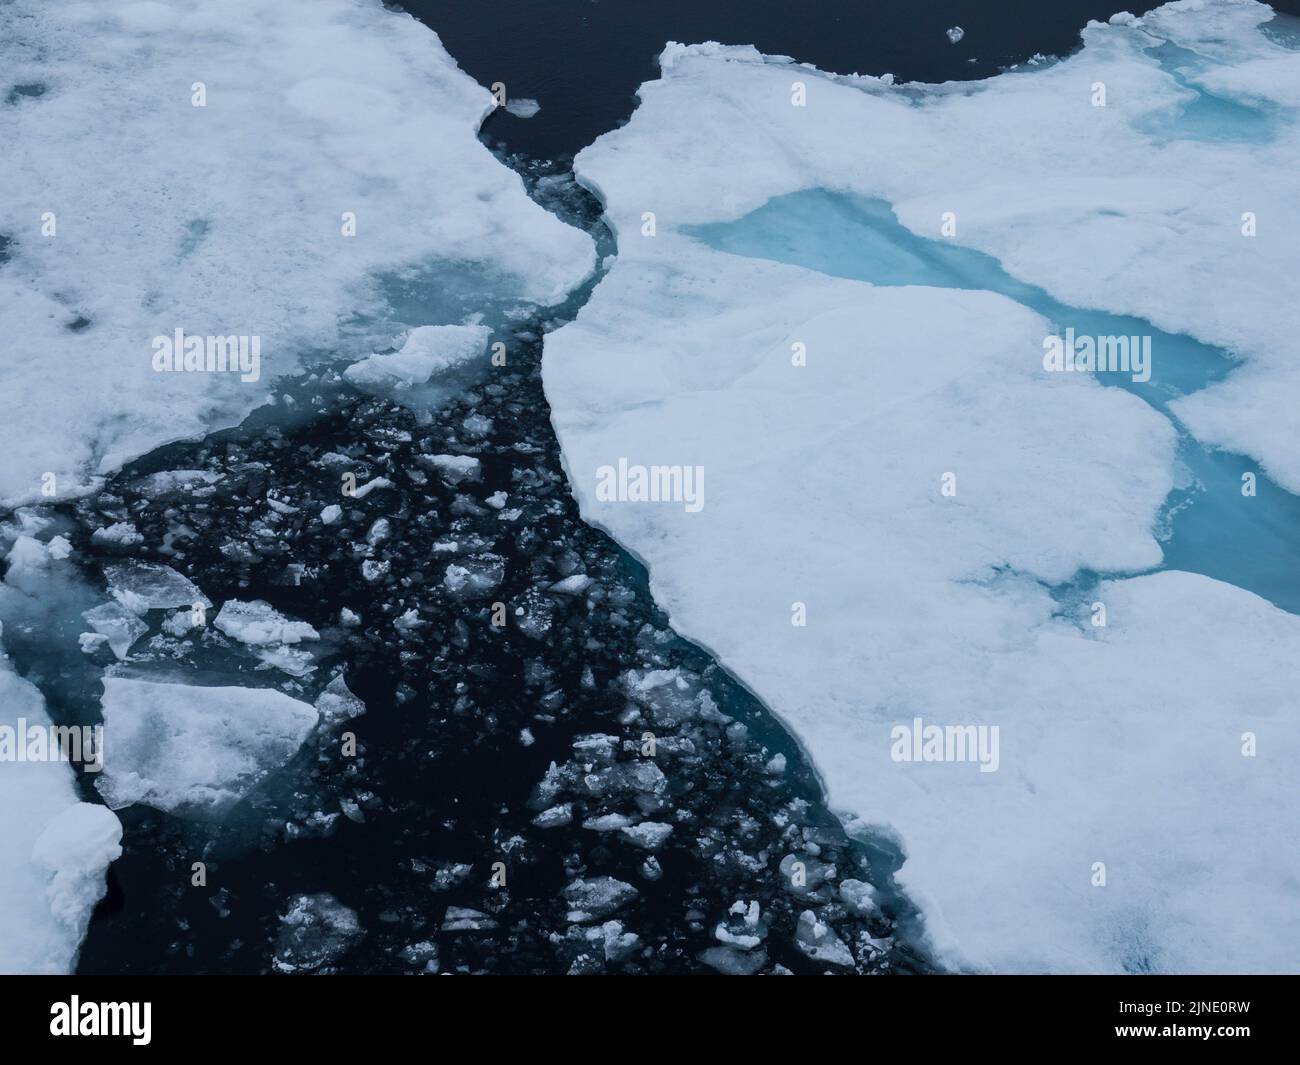 Pack de glace flottant dans l'océan arctique. La glace glaciaire bleue recouverte de neige est une nature sauvage préservée. Svalbard, Norvège Banque D'Images